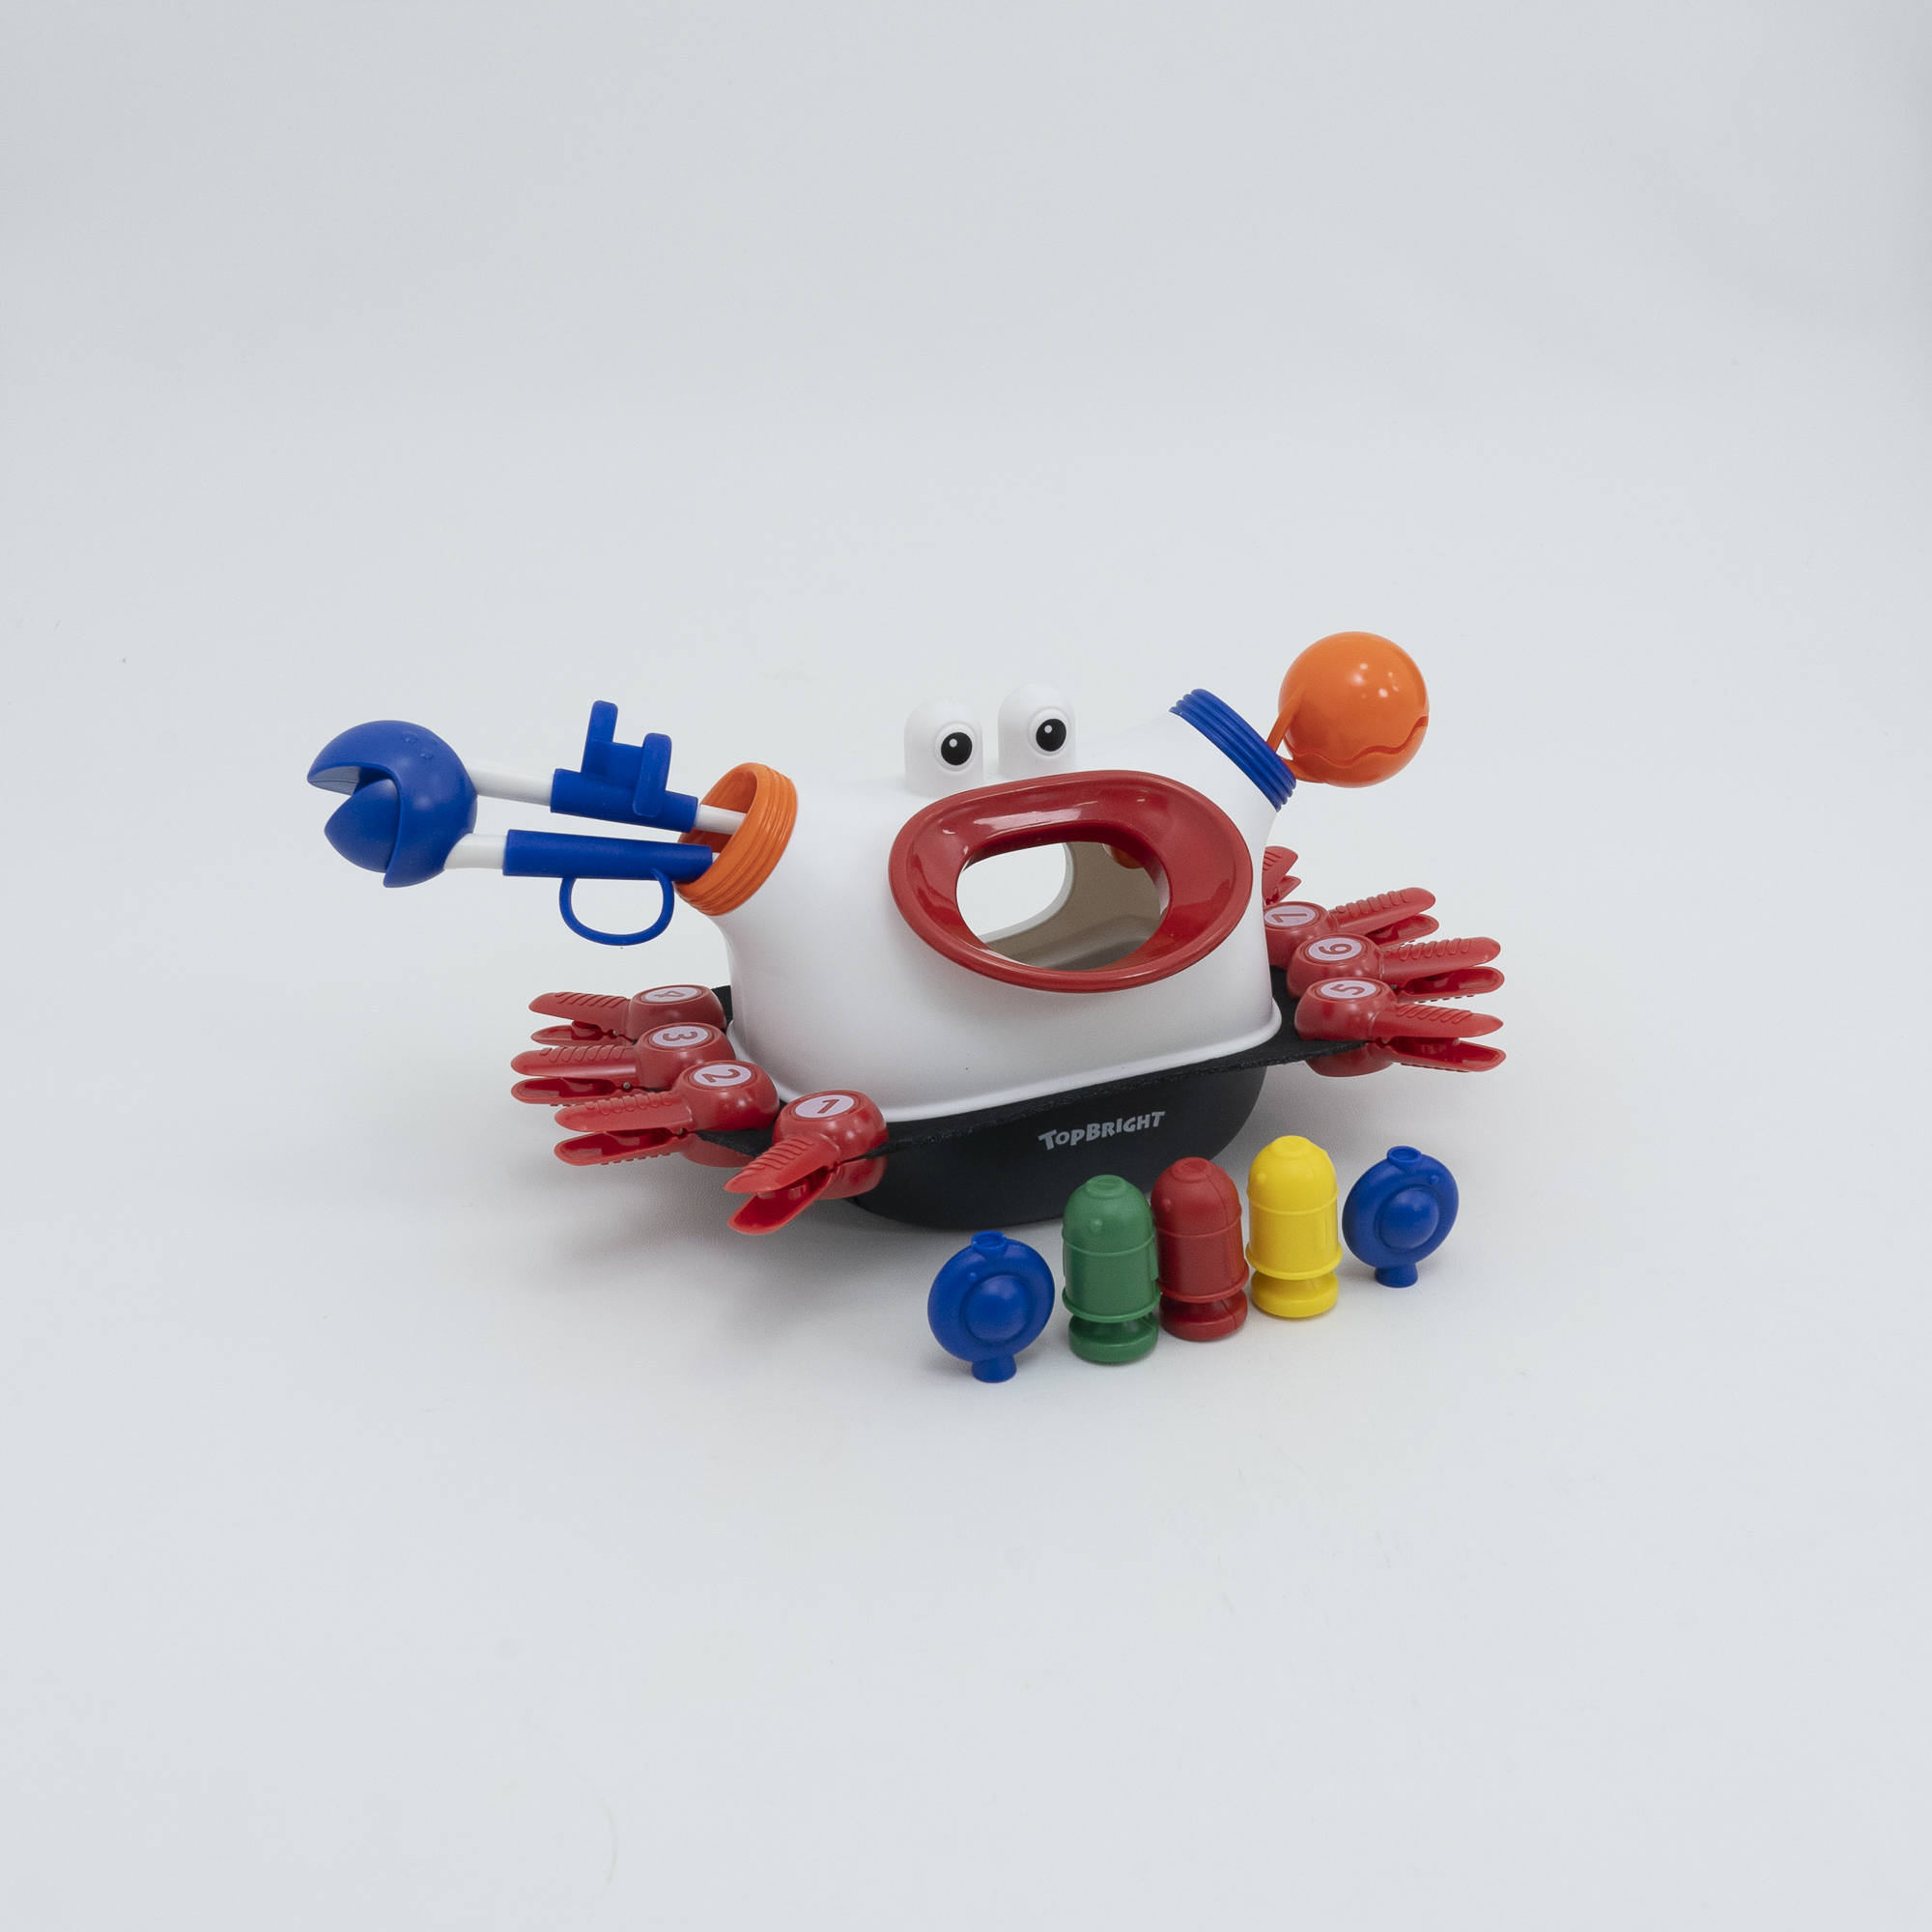 『早期開発おもちゃ』かわいいカニさんグリップトレーニングのおもちゃ｜ 子供の手の器用さ、創造性を刺激し、能力の開発に役立つ。 誕生日プレゼントに最適！|undefined